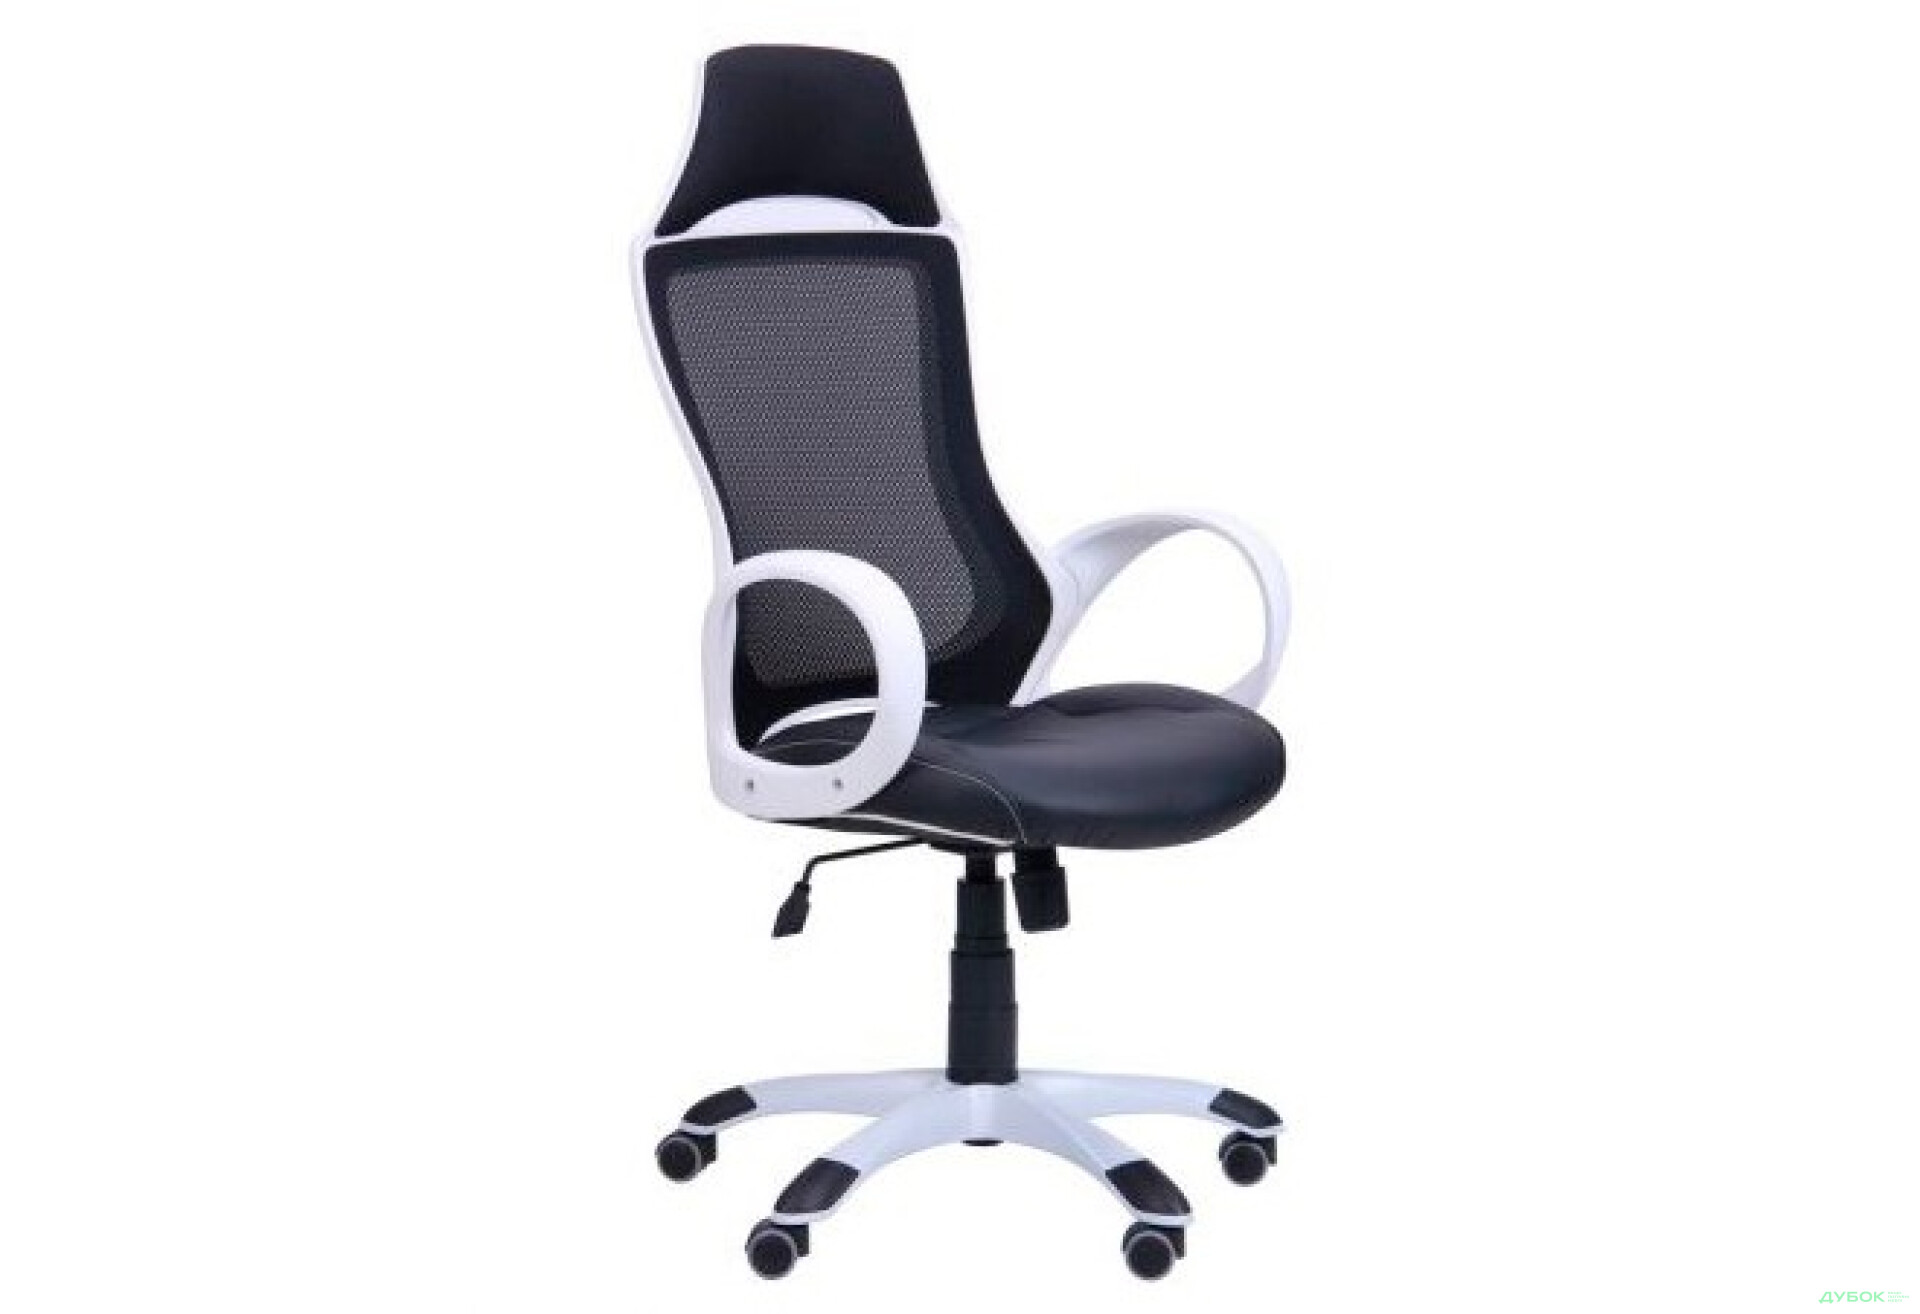 Фото 1 - Кресло Viper белый, сиденье Неаполь N-20/спинка Сетка черная, арт.261756 АМФ